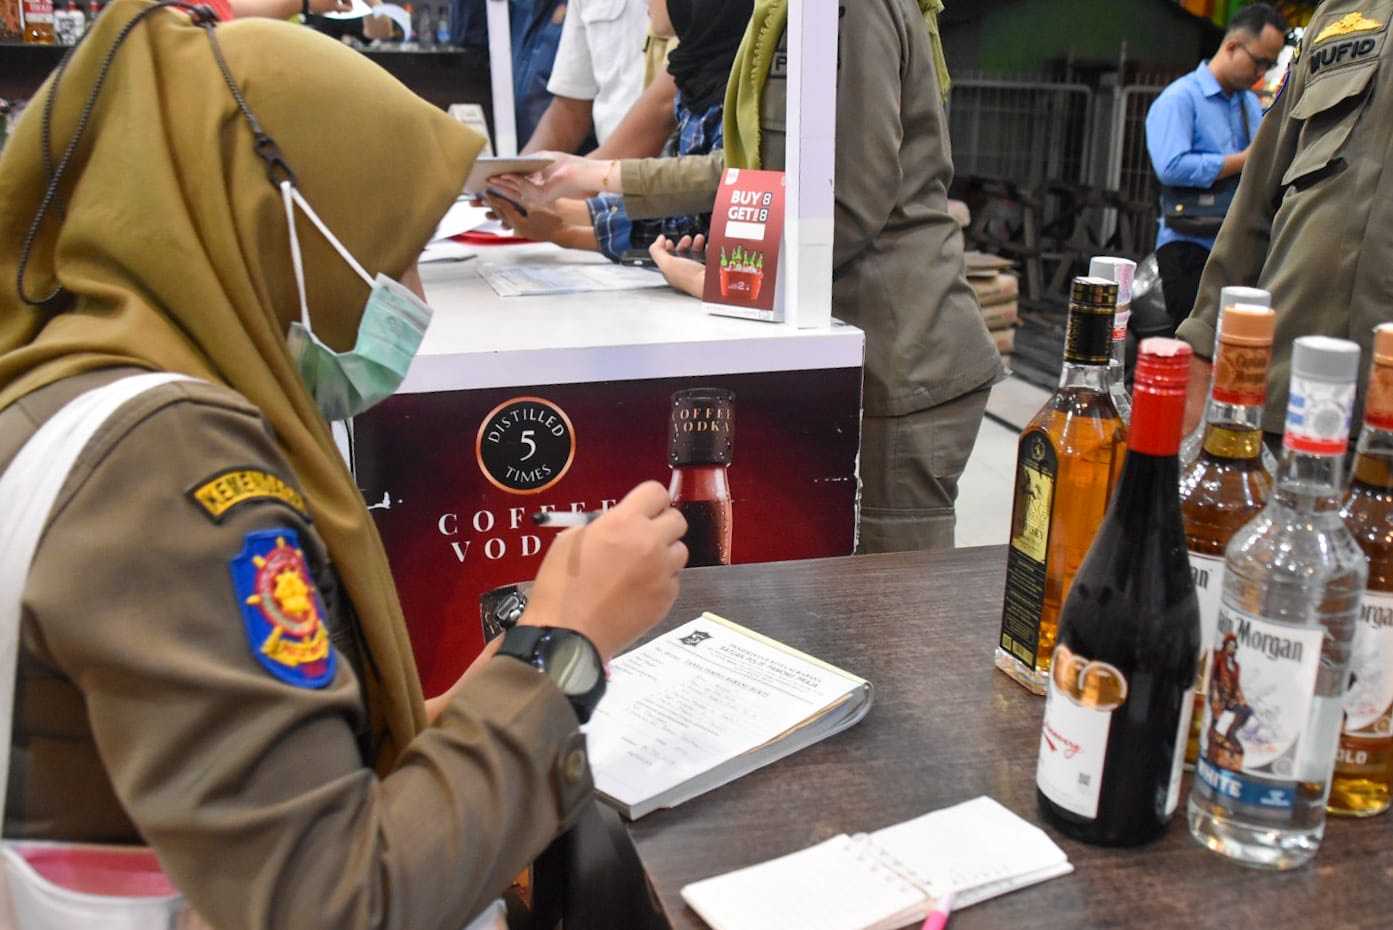 Operasi Selama Sebulan, Satpol PP Surabaya Amankan 146 Botol Mihol Ilegal